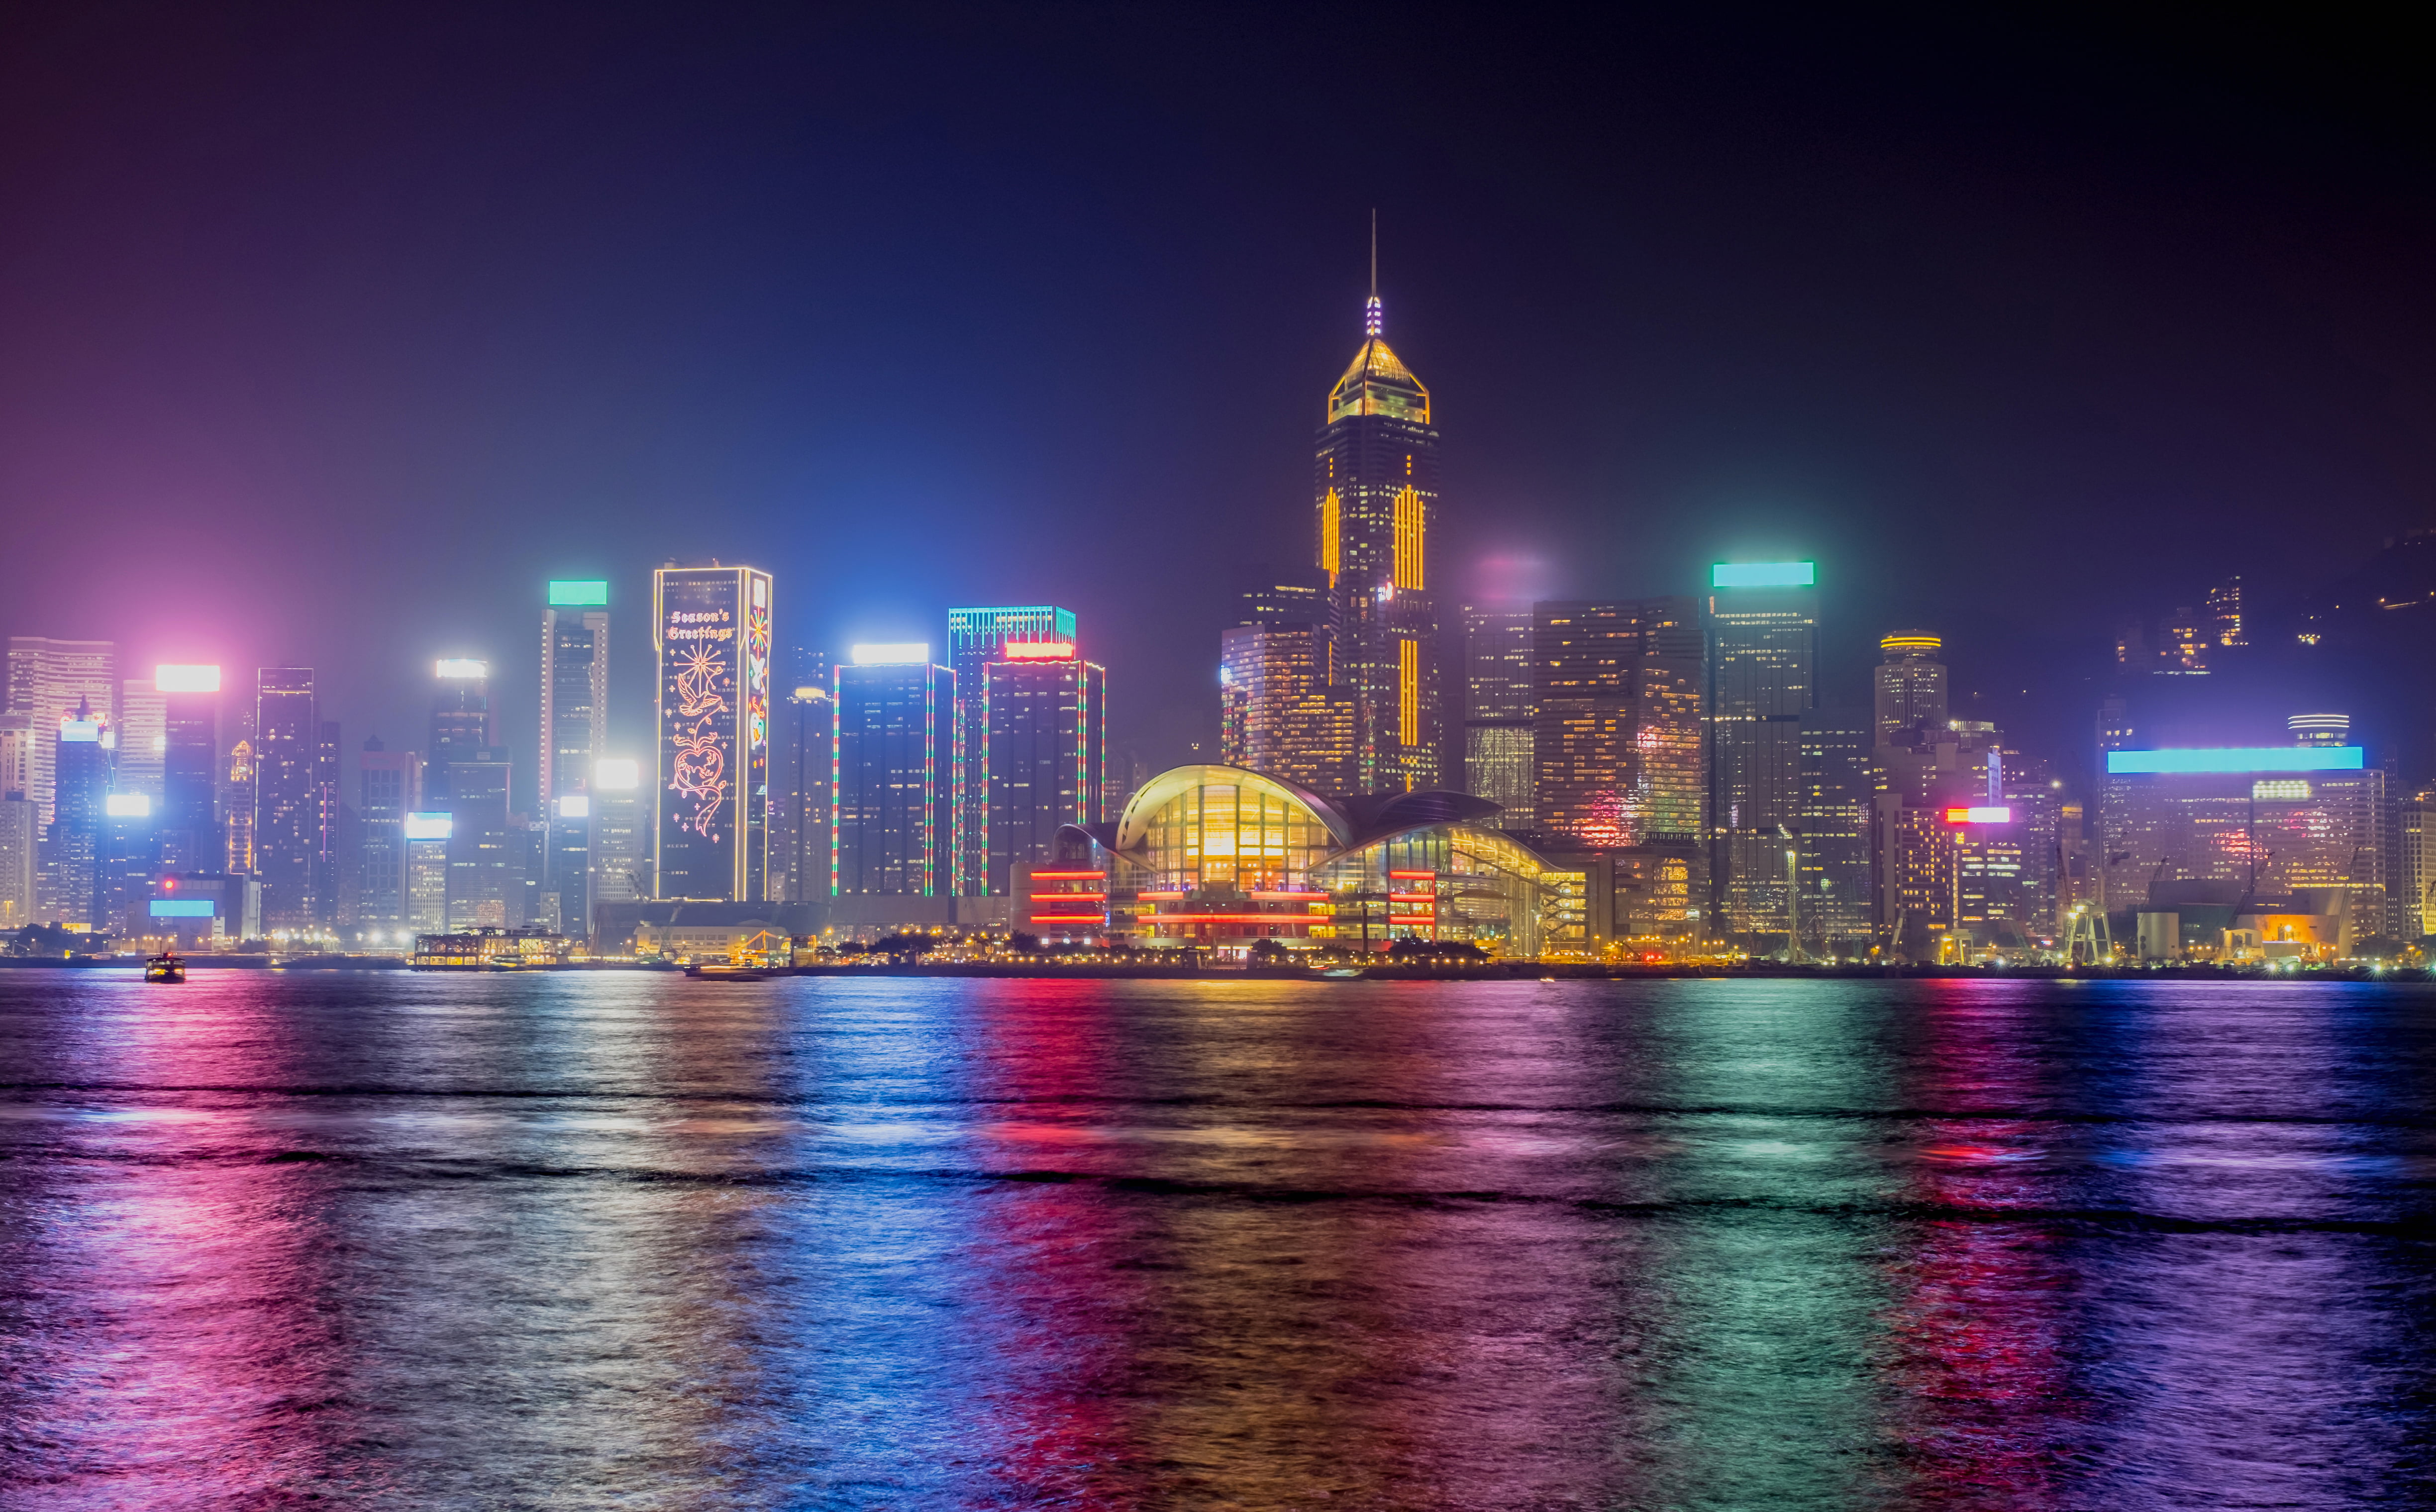 Hong Kong Skyline 4k , HD Wallpaper & Backgrounds